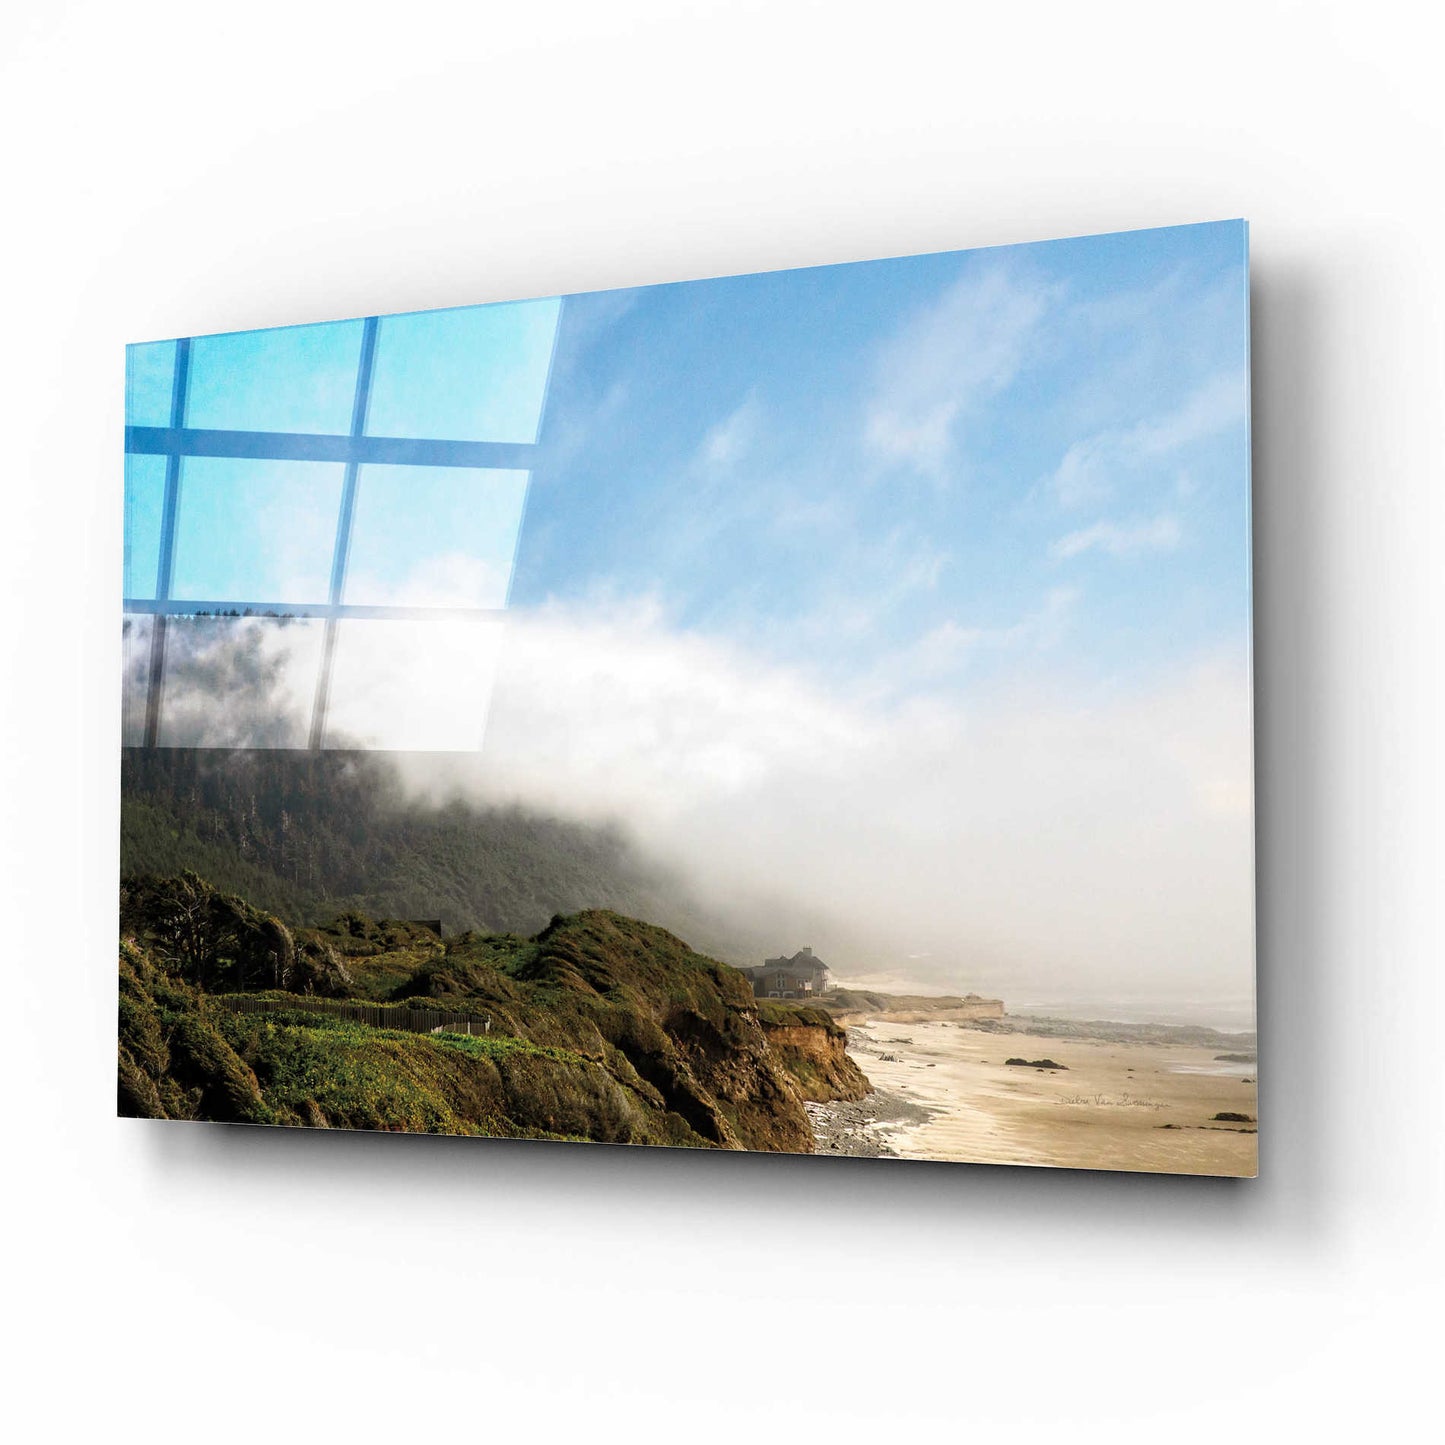 Epic Art 'Coastal Fog' by Debra Van Swearingen, Acrylic Glass Wall Art,16x12